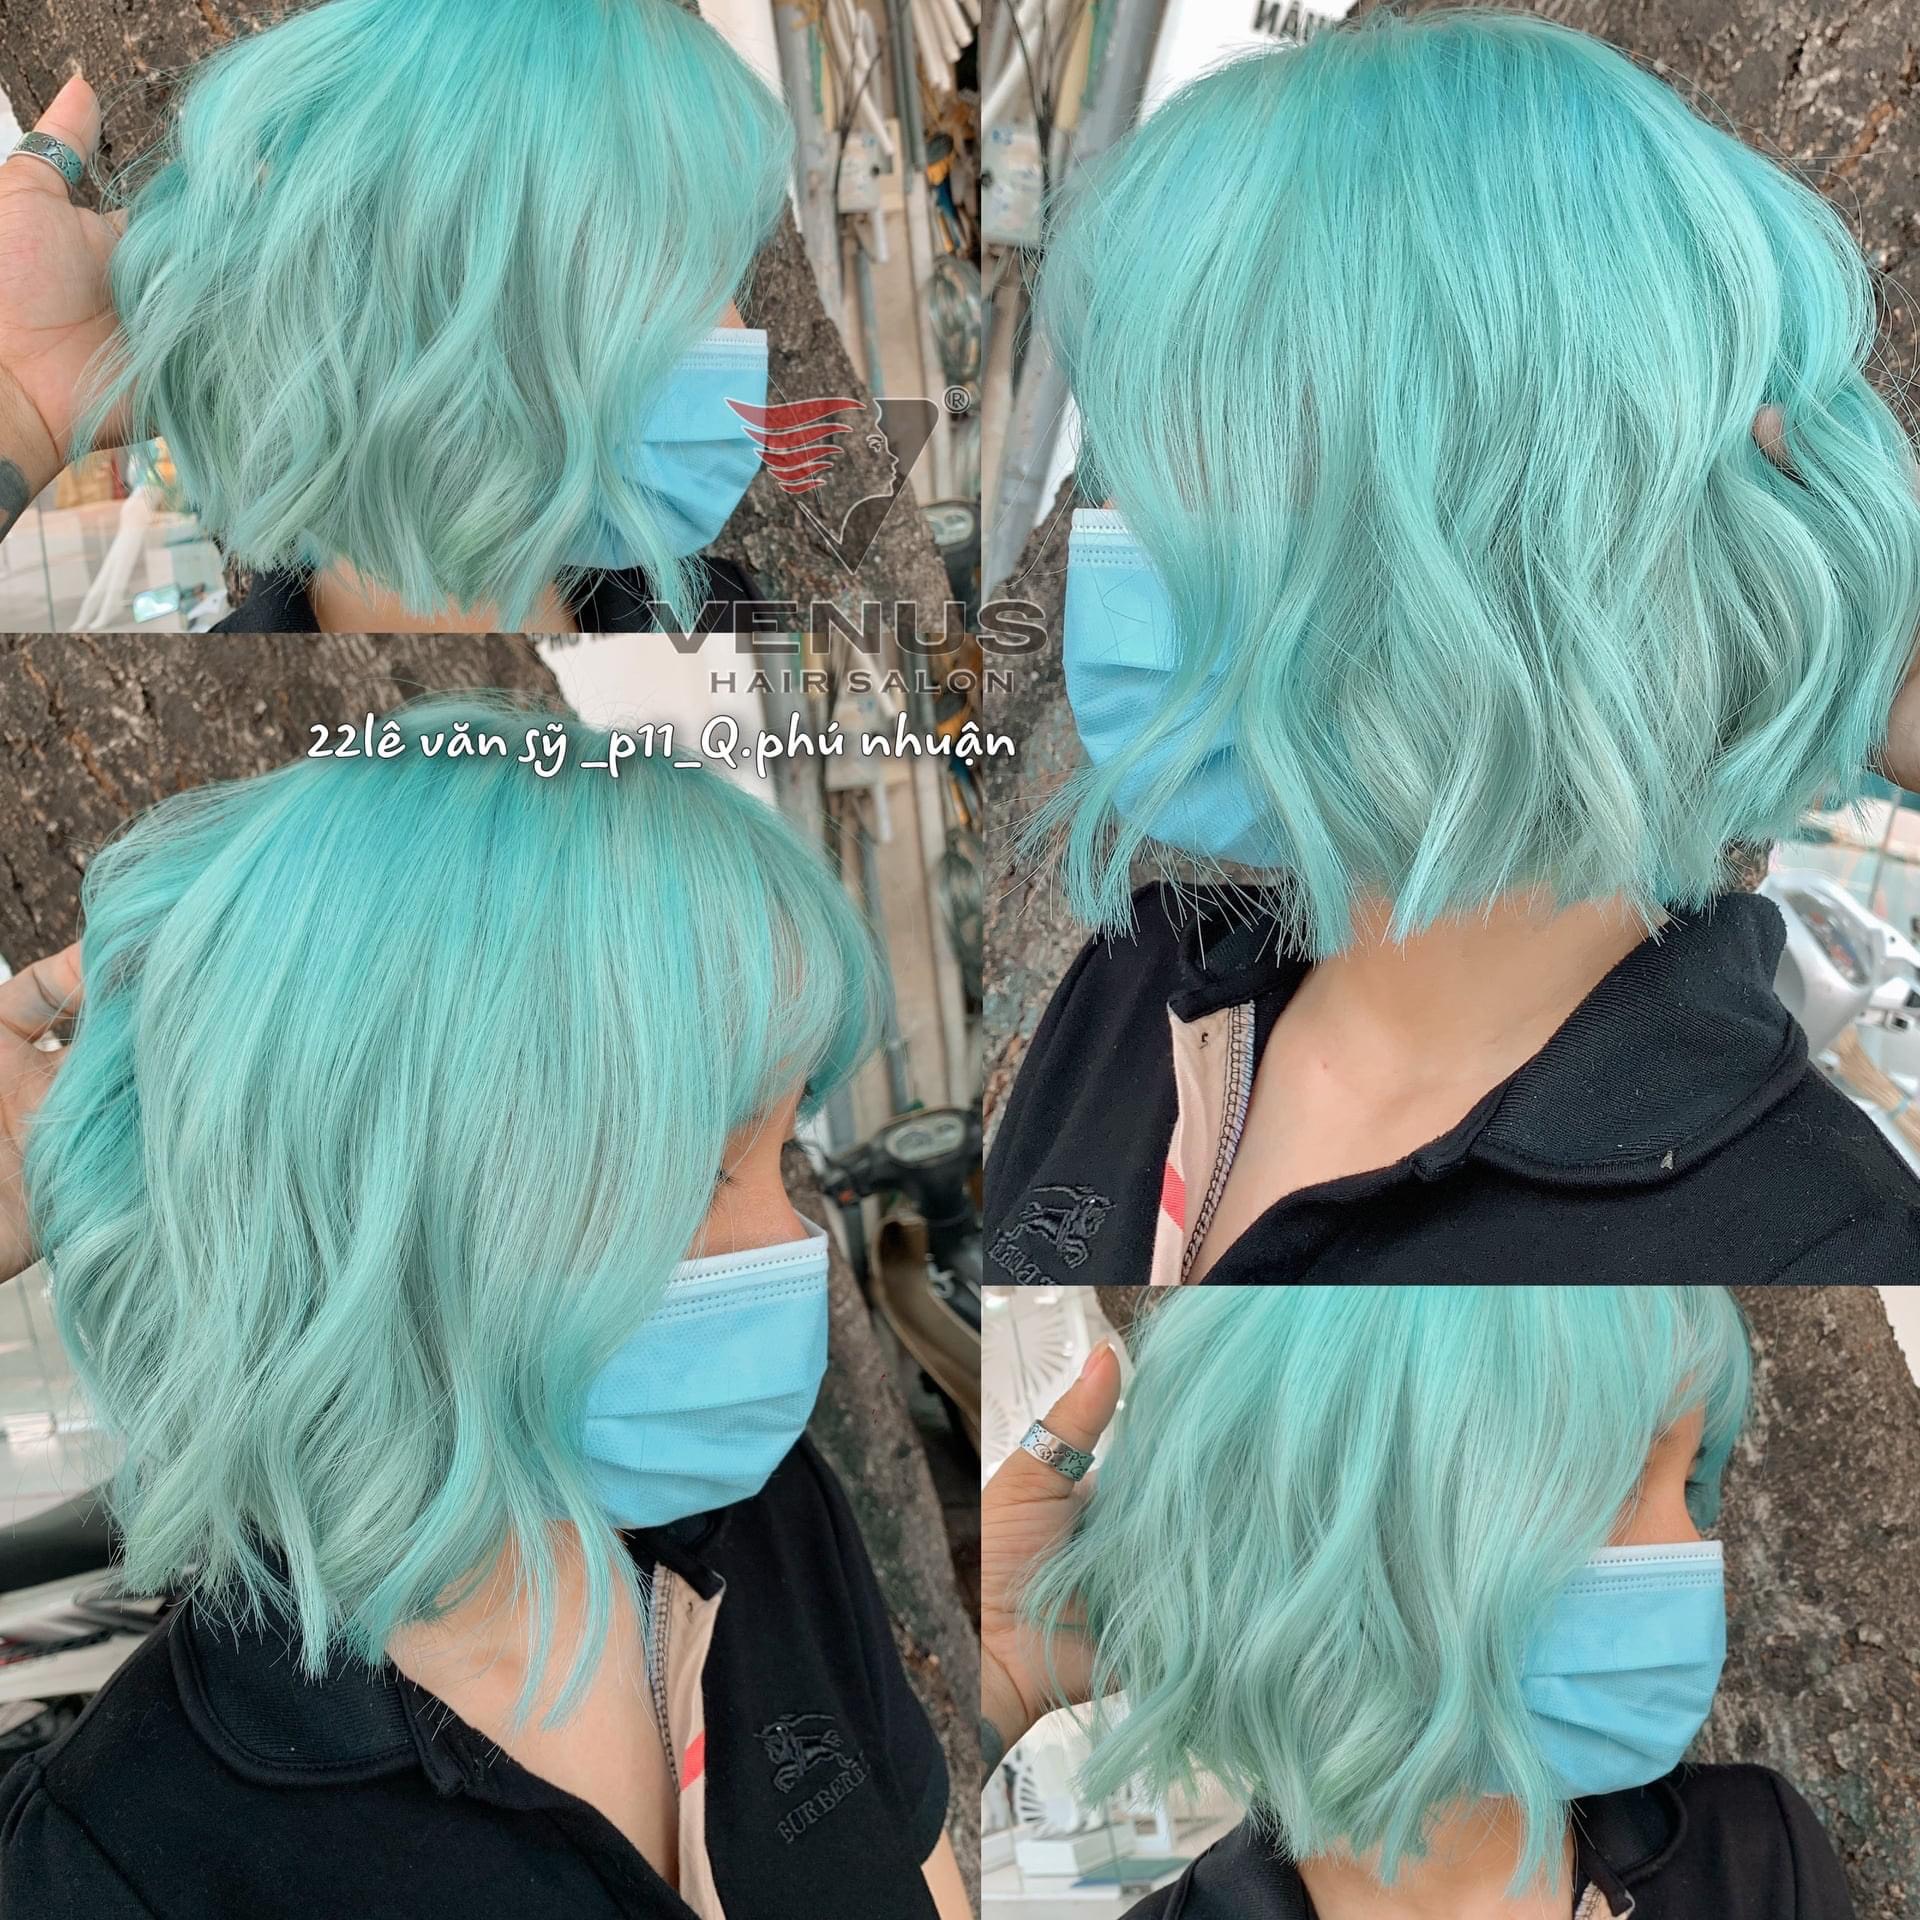 Đến cả màu tóc xanh pastel khó nhằn cũng phải chịu thua trước Quỳnh Anh Shyn